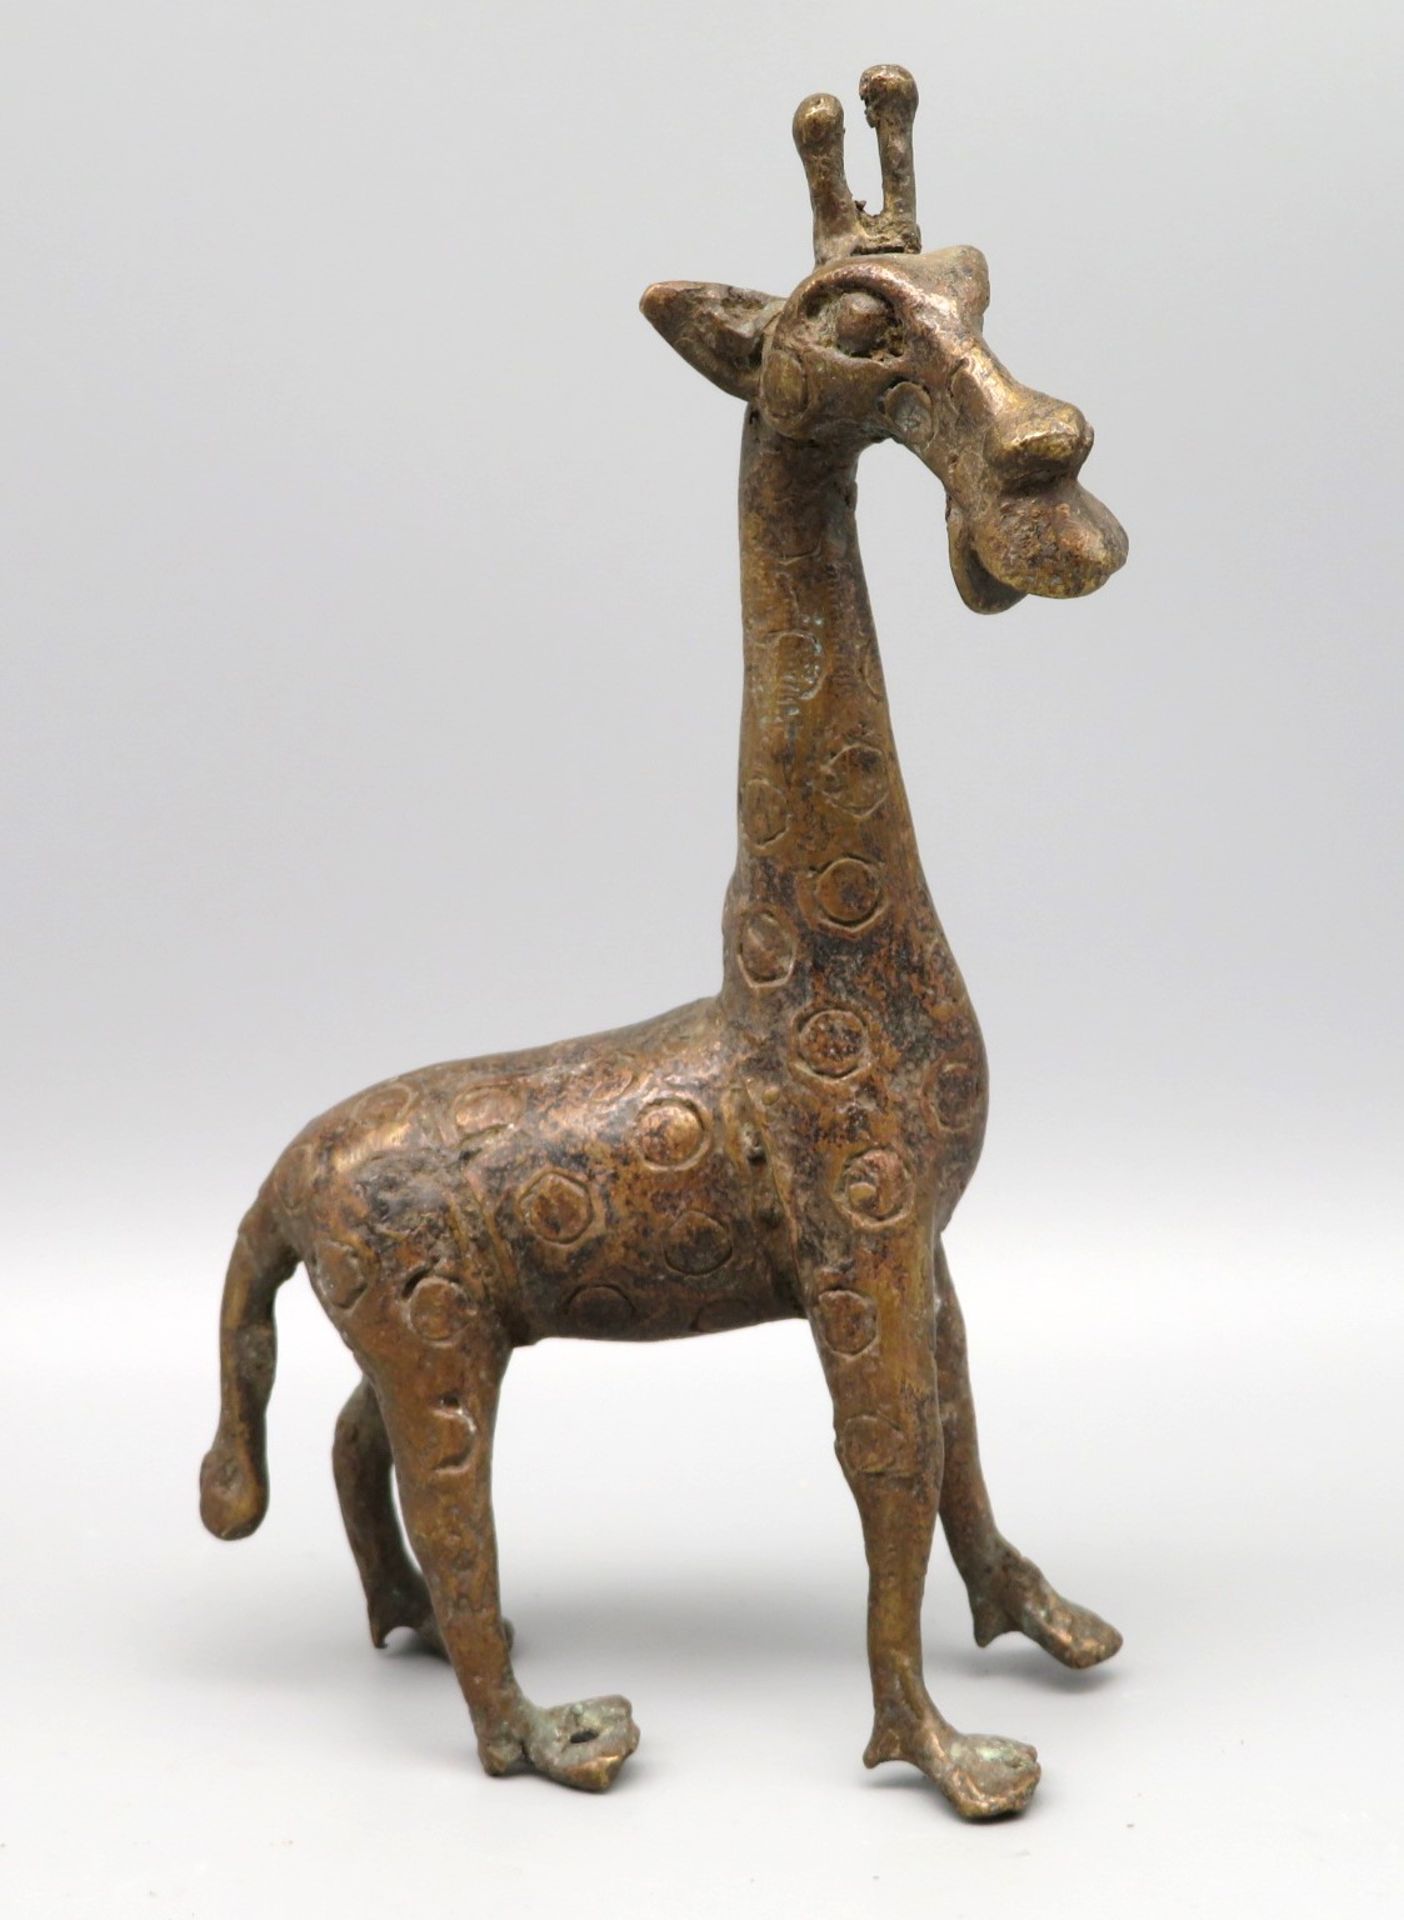 Stehende Giraffe, Afrika, Benin, Bronze, authentisch, 19 x 13 x 5 cm.